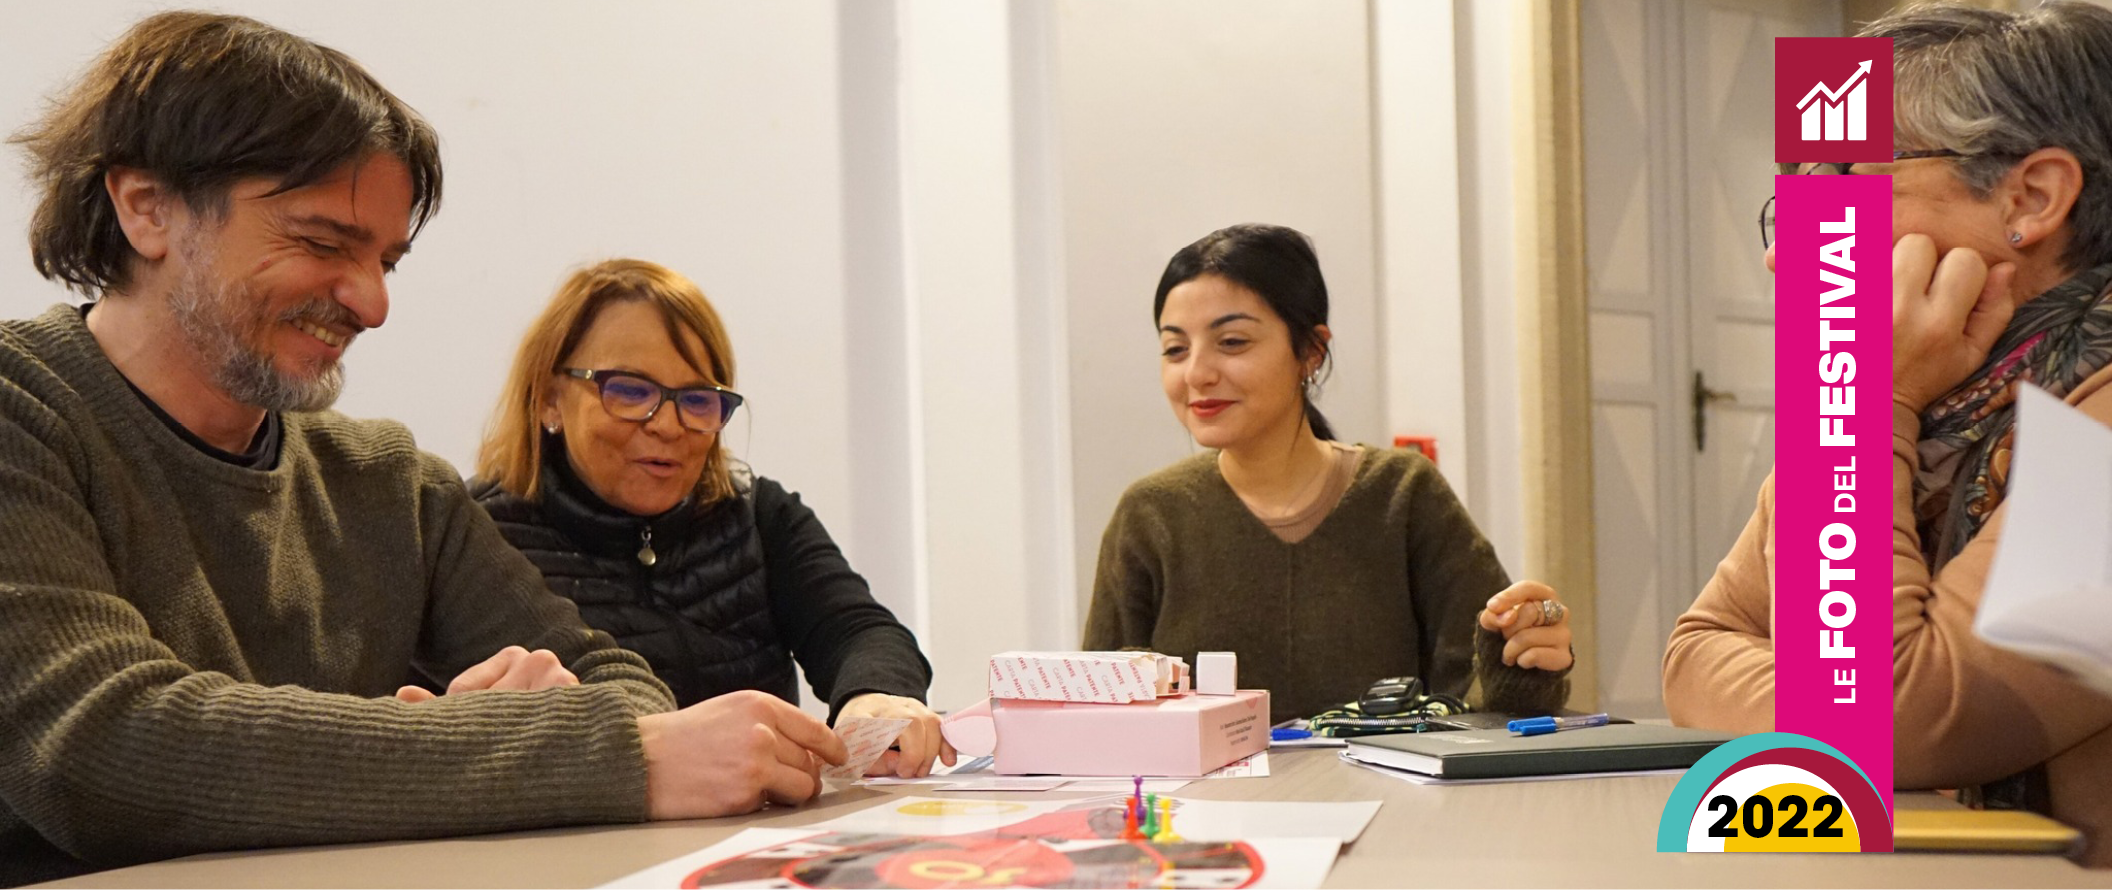 Le foto del seminario-workshop gioco I.D.E.A., didattica ludica per l’insegnamento dell’italiano